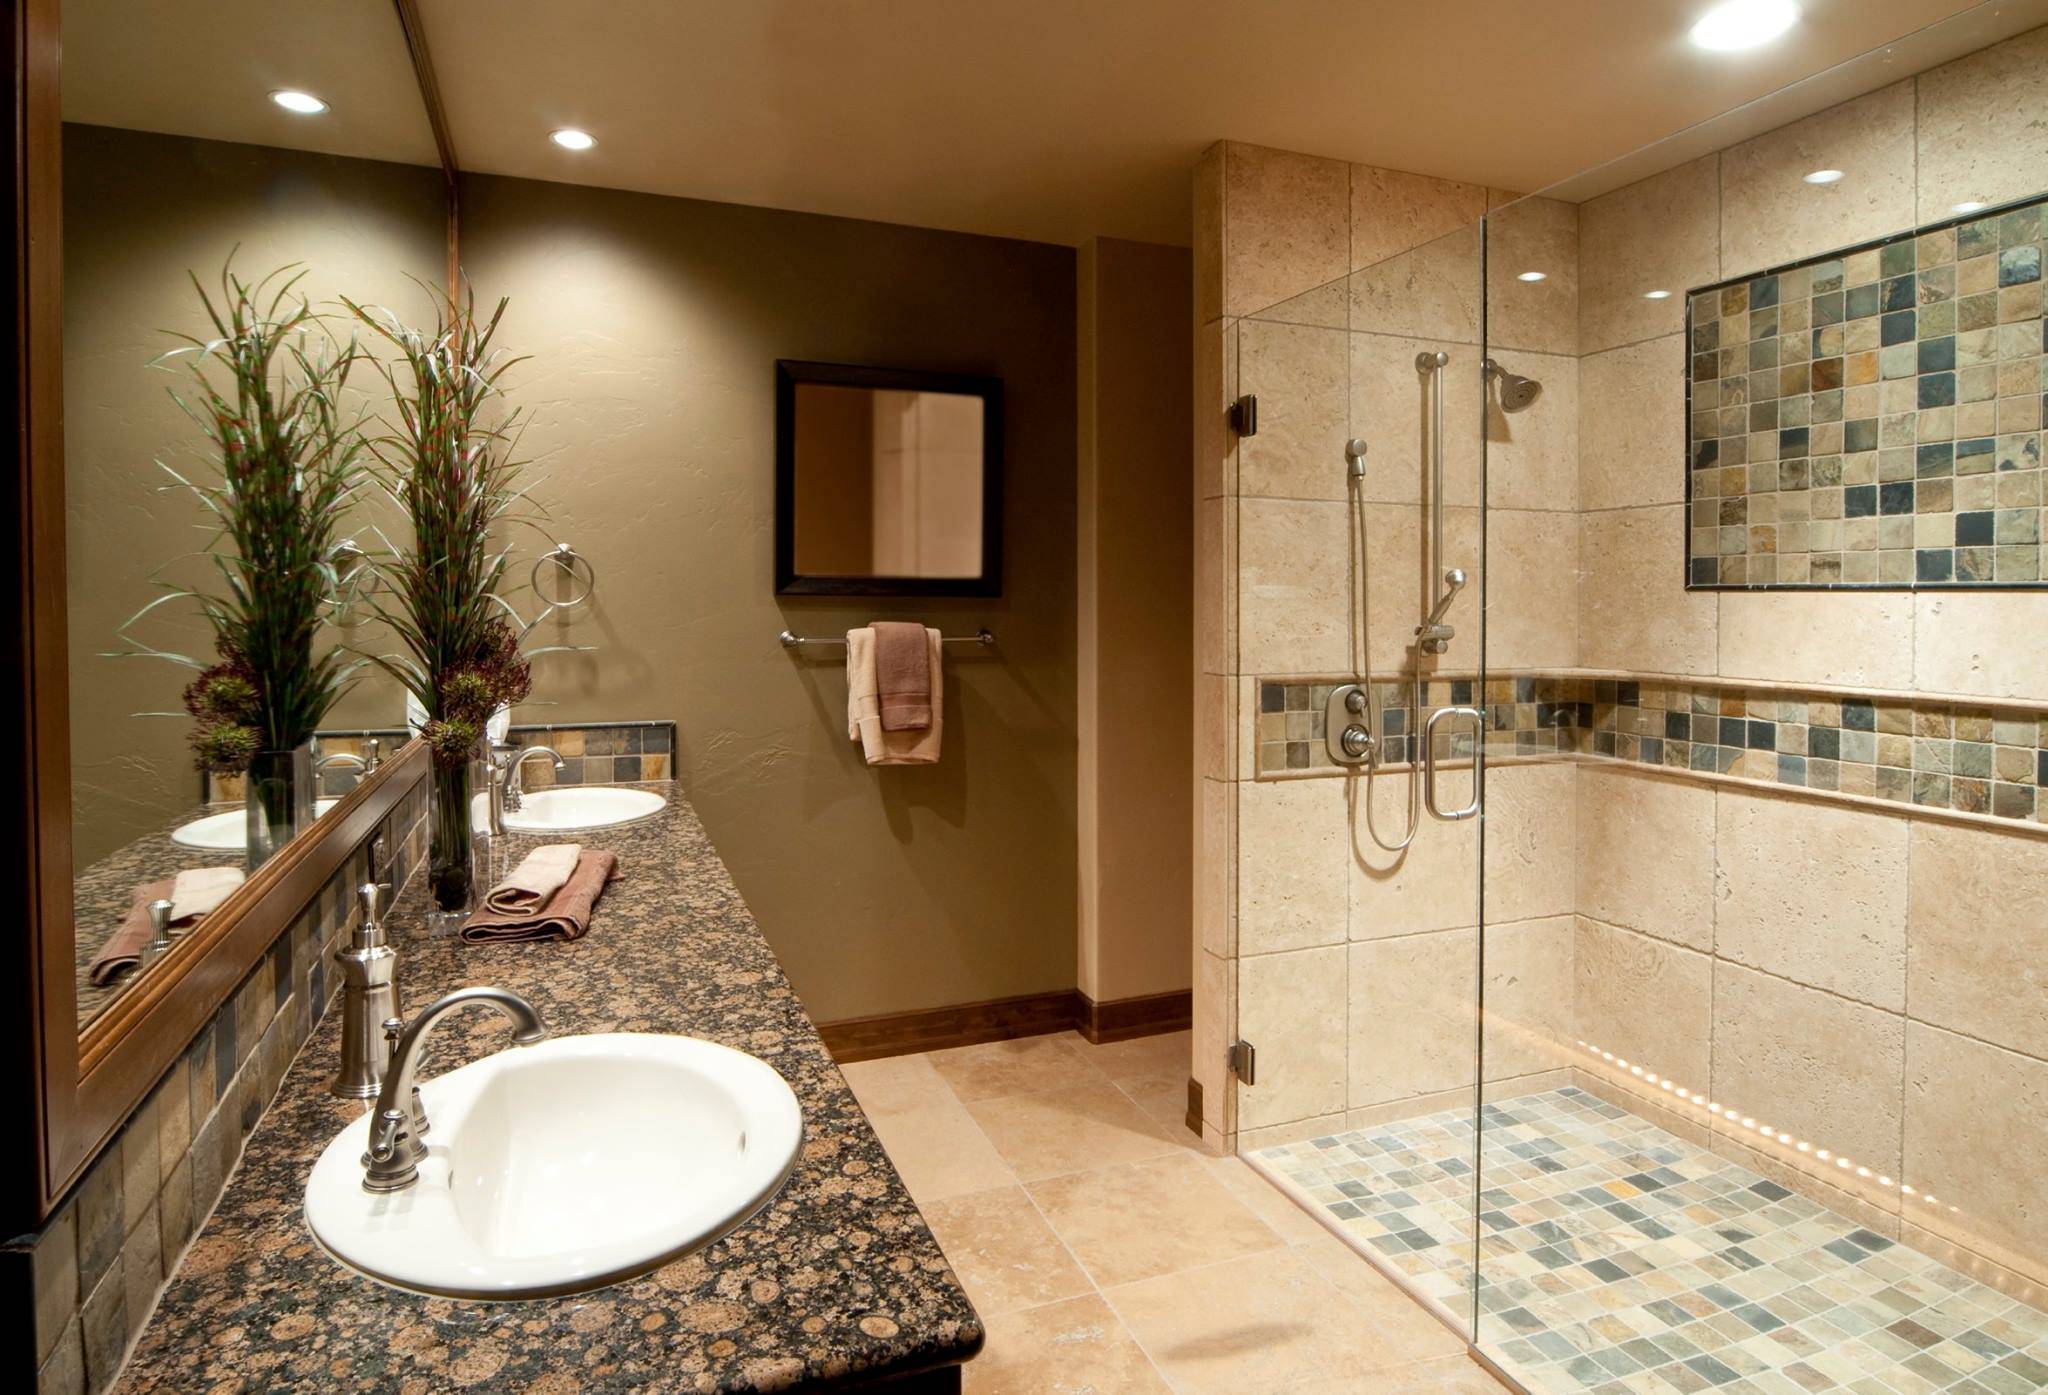 Ванная комната с душевой в частном доме дизайн фото